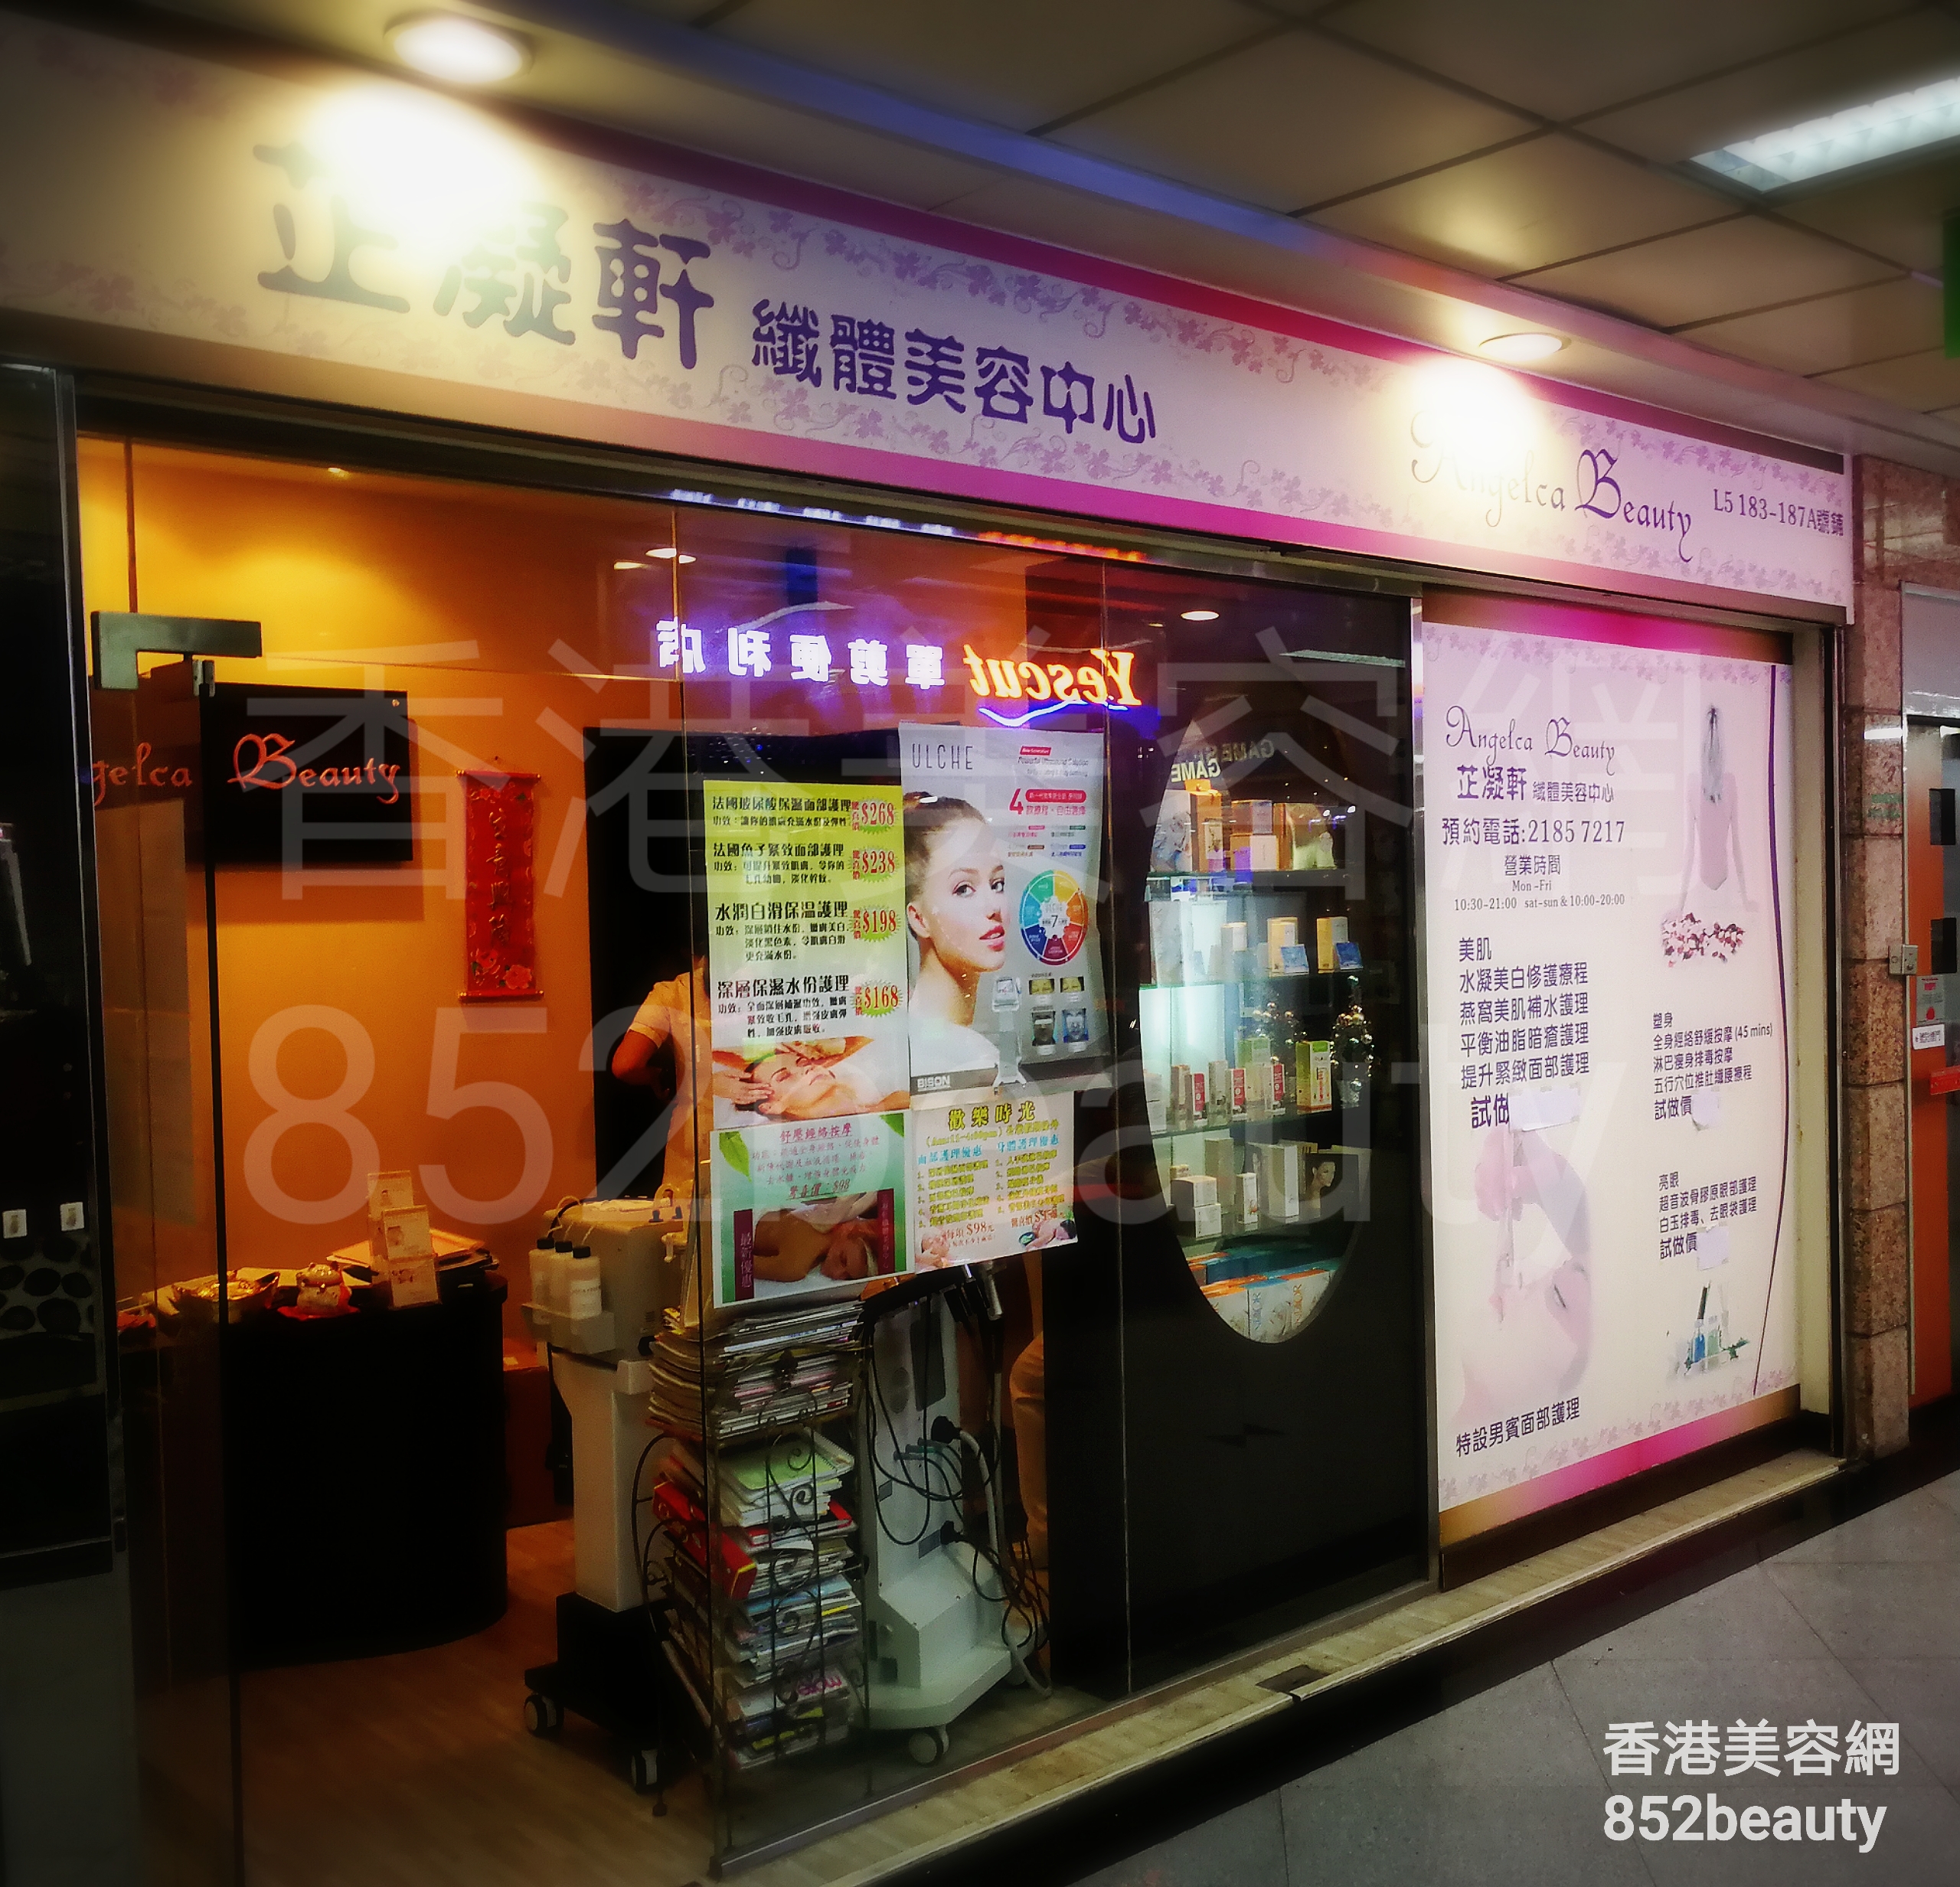 香港美容網 Hong Kong Beauty Salon 美容院 / 美容師: 芷凝軒纖體美容中心